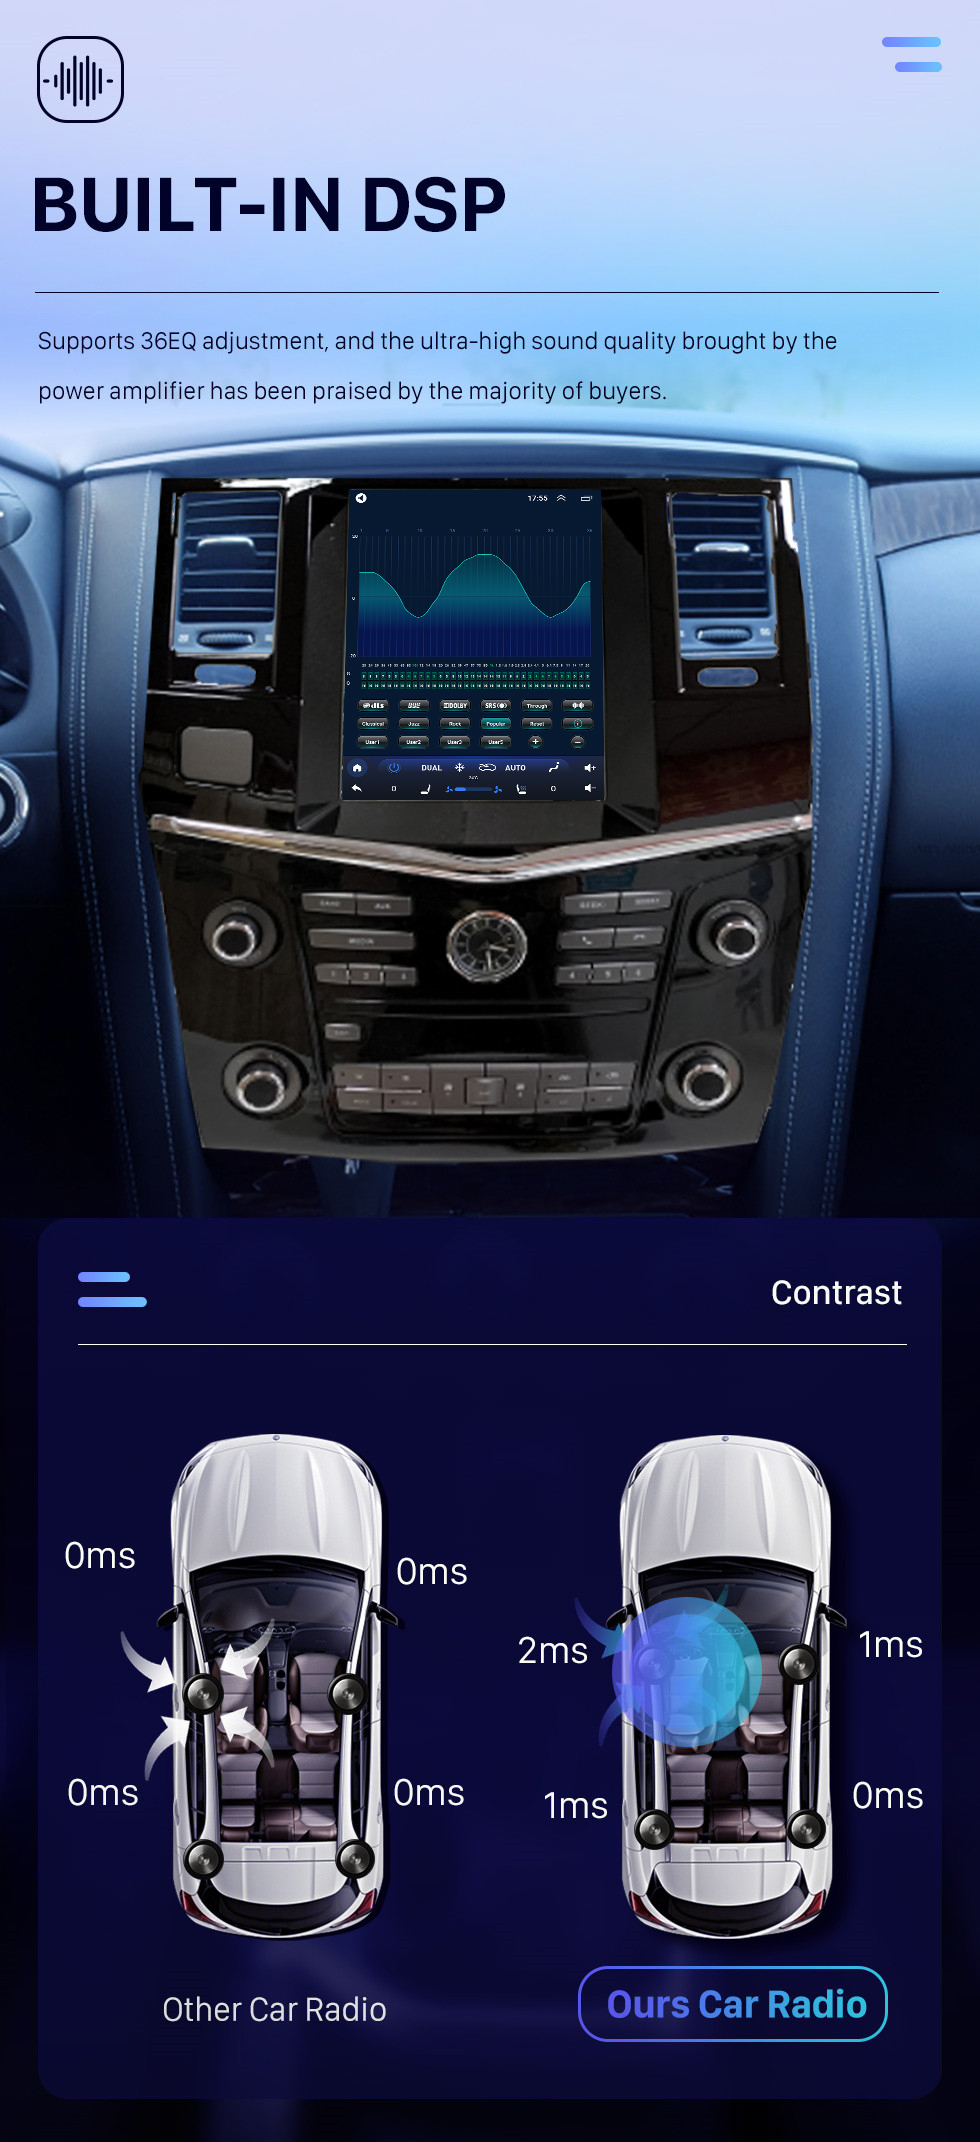 Seicane OEM Android 10.0 для автомобиля Nissan Patrol 2017 года с 9,7-дюймовым HD-сенсорным экраном Система GPS-навигации Поддержка Carplay AHD-камера заднего вида DAB+ DSP OBD2 DVR